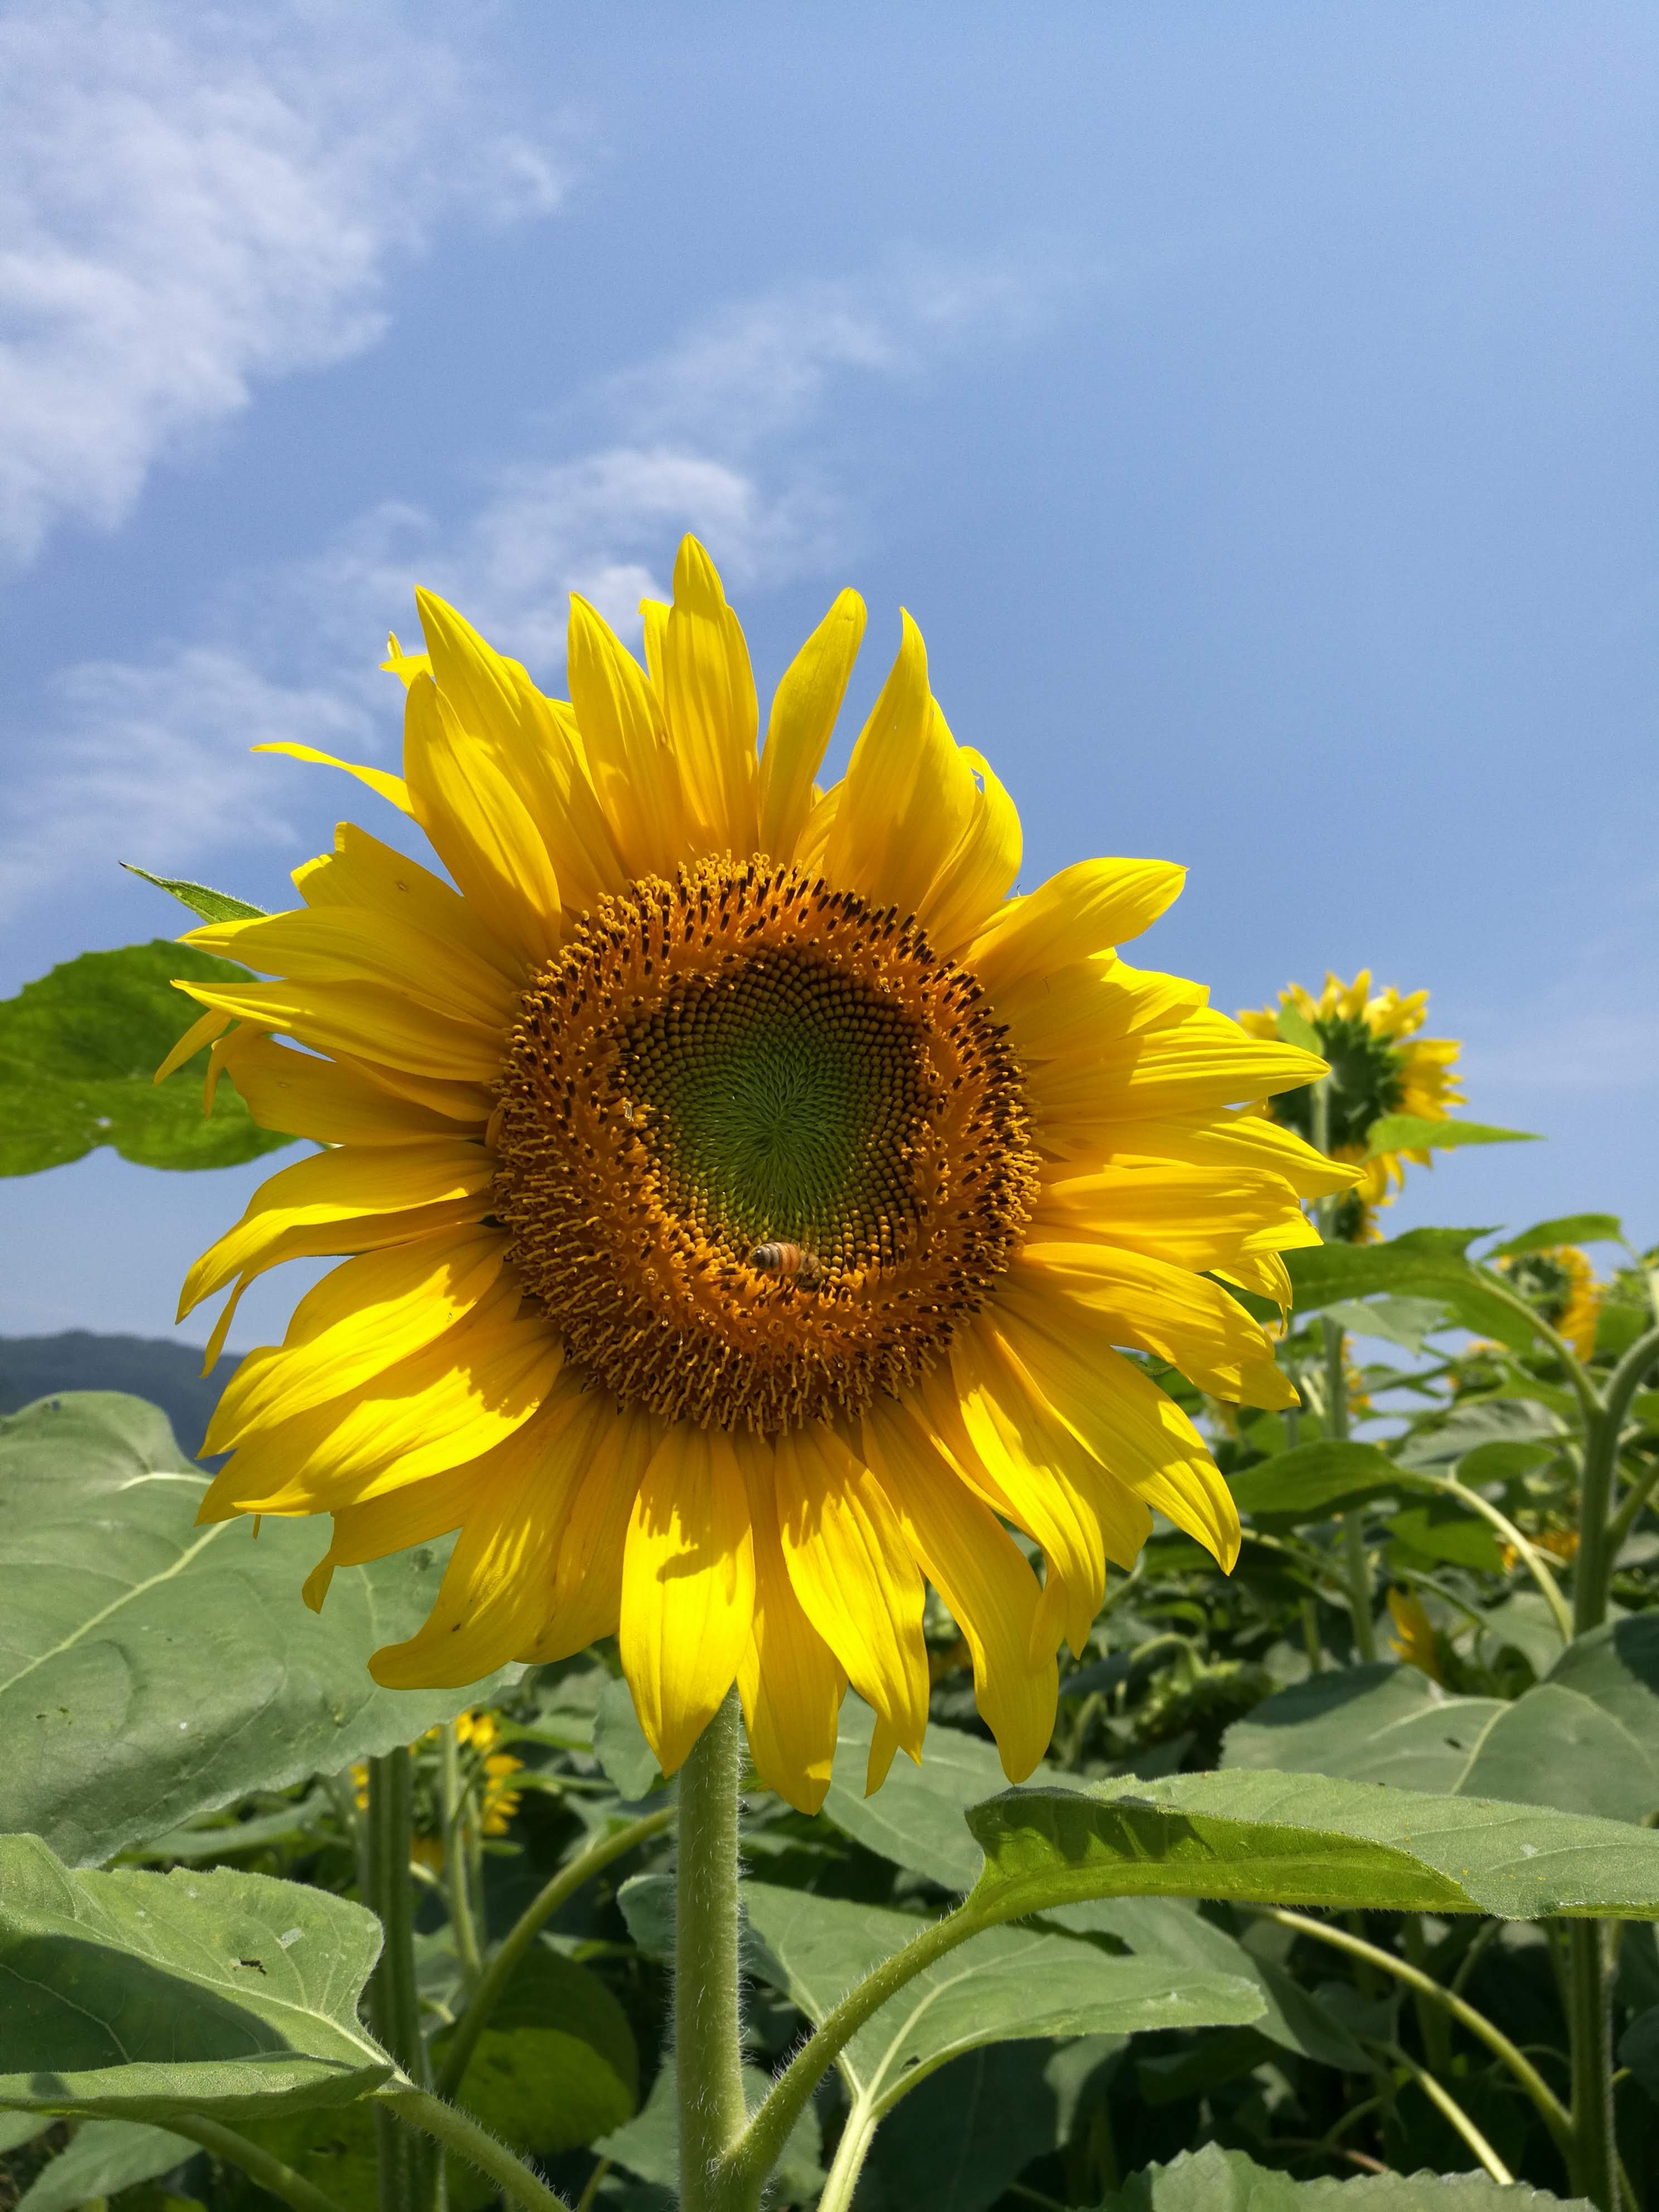 出間のひまわり畑 蓮池公園 初夏の絶景さわやかサイクリング 高知県土佐市 高知に移住したのーてんき女のブログ